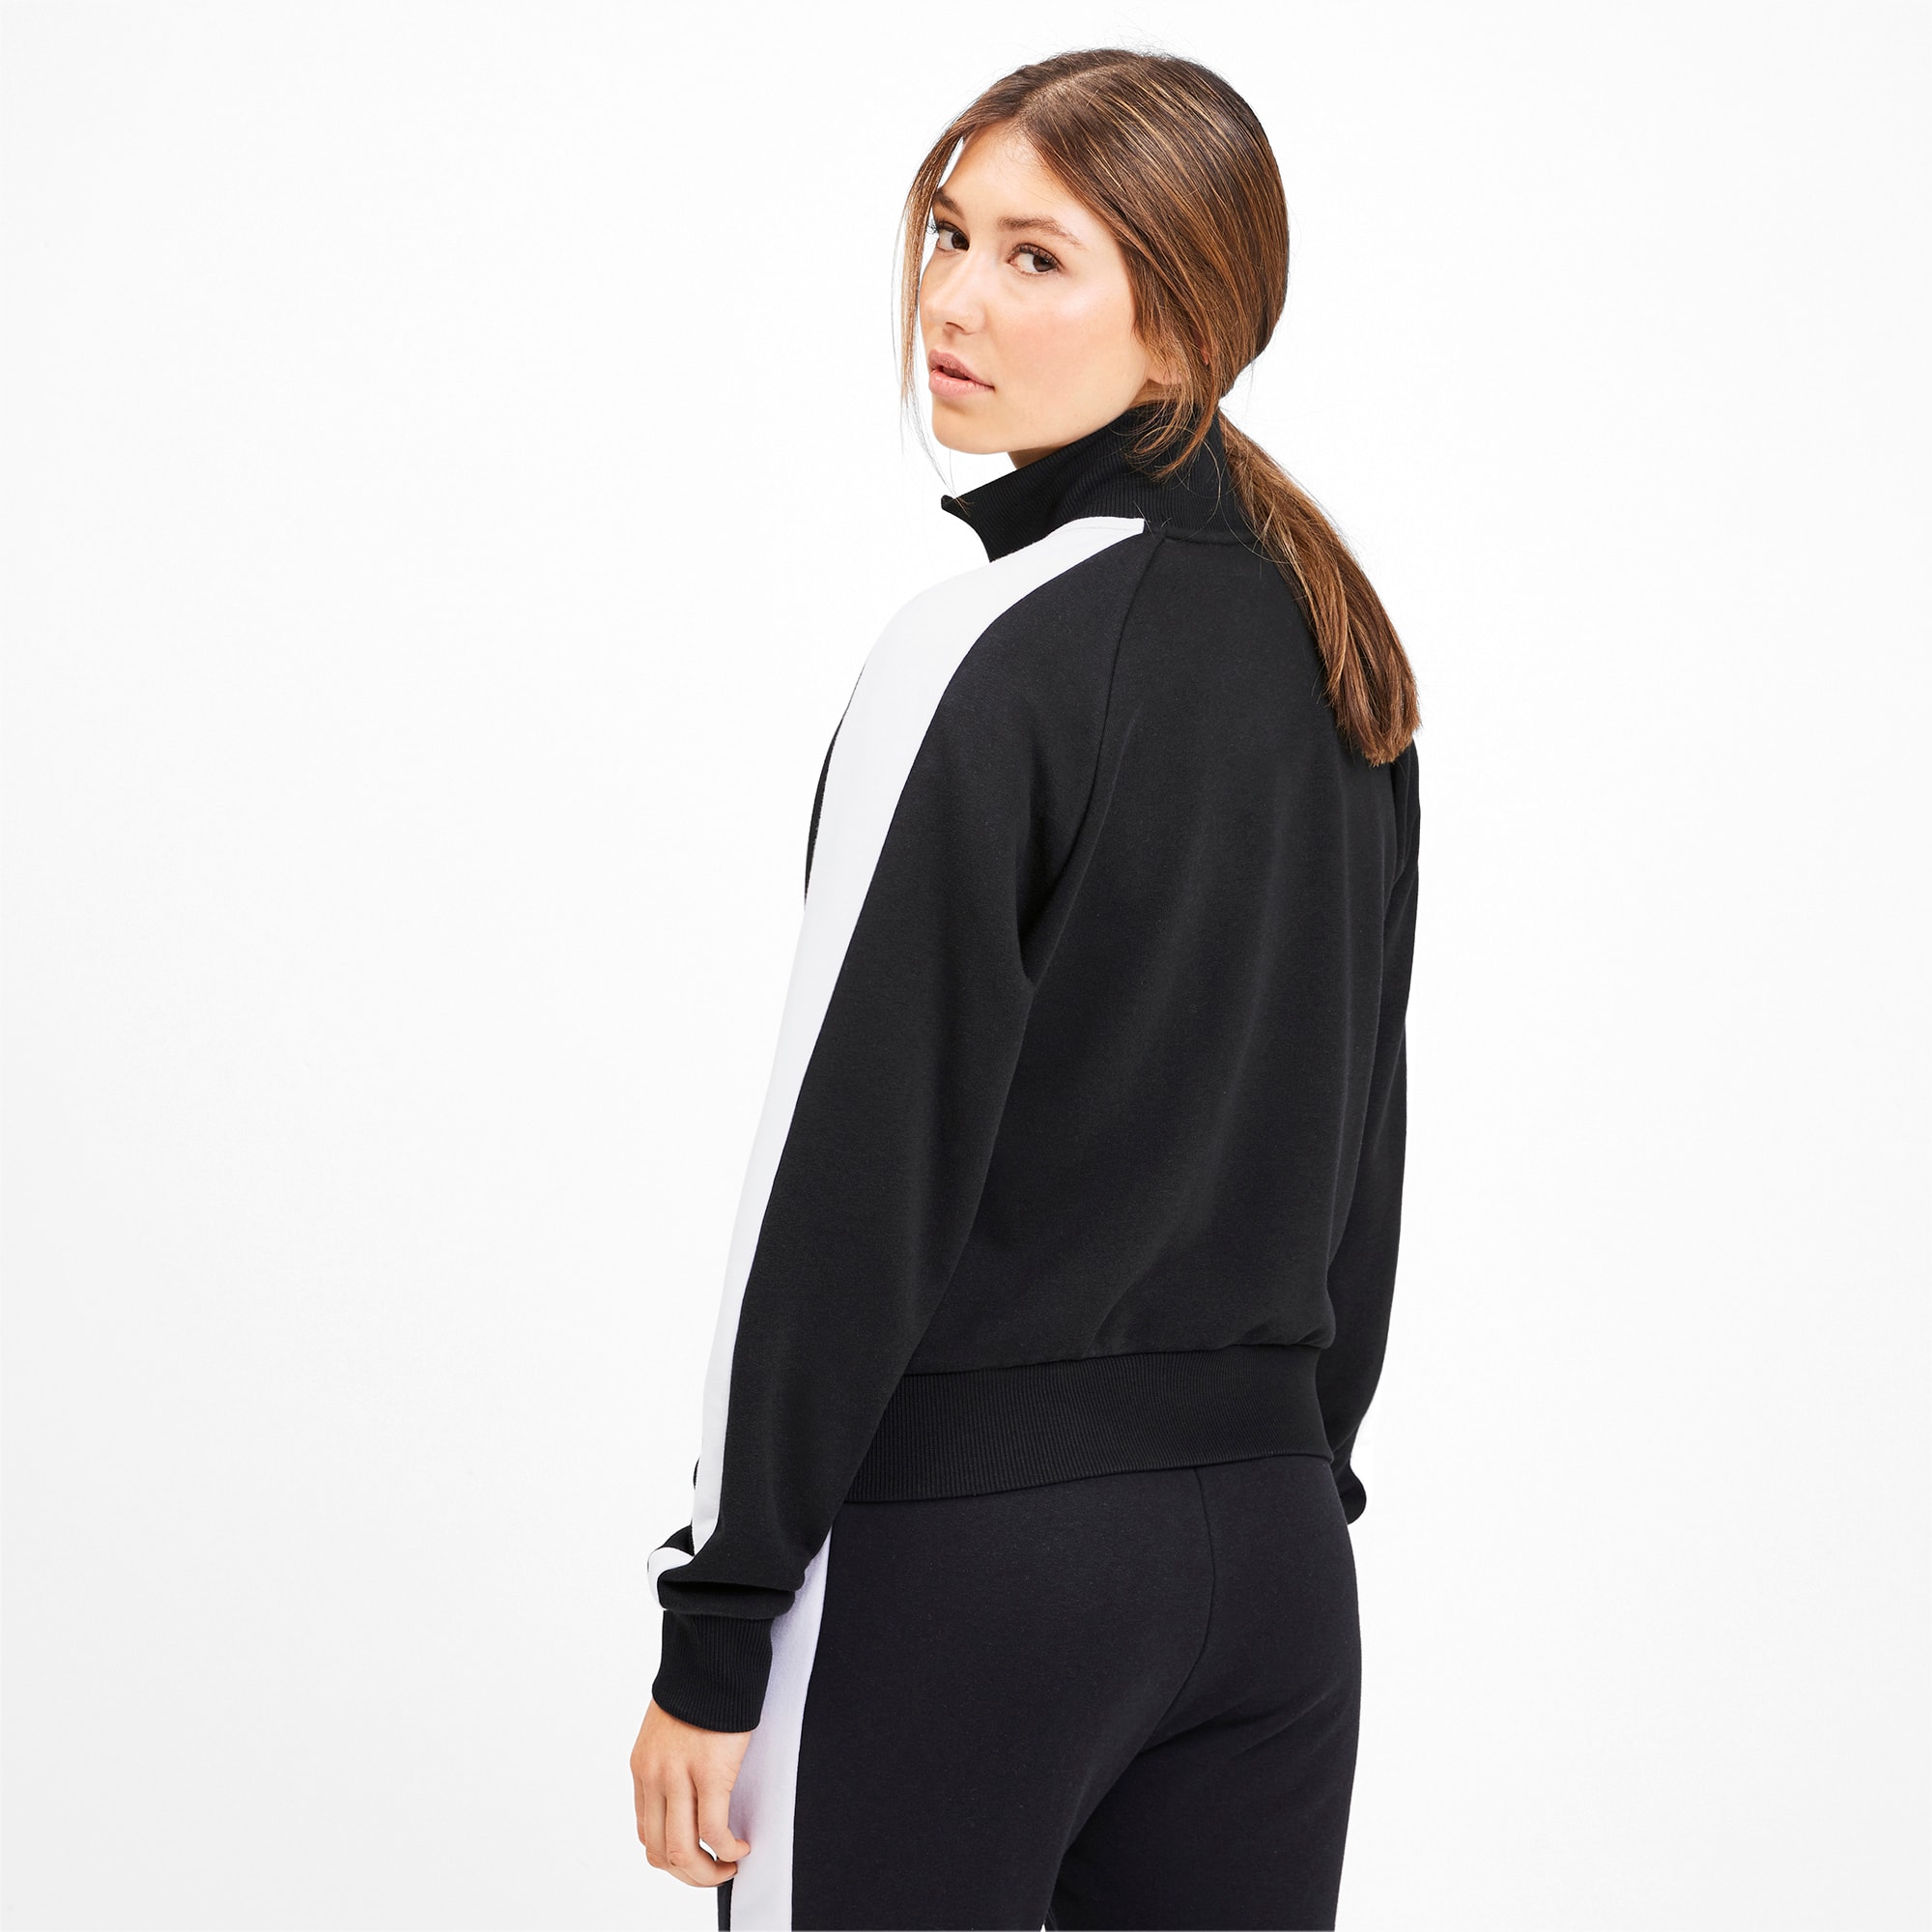 District Concept Store - PUMA Iconic T7 Crop Women Jacket - Black  (531623-01)